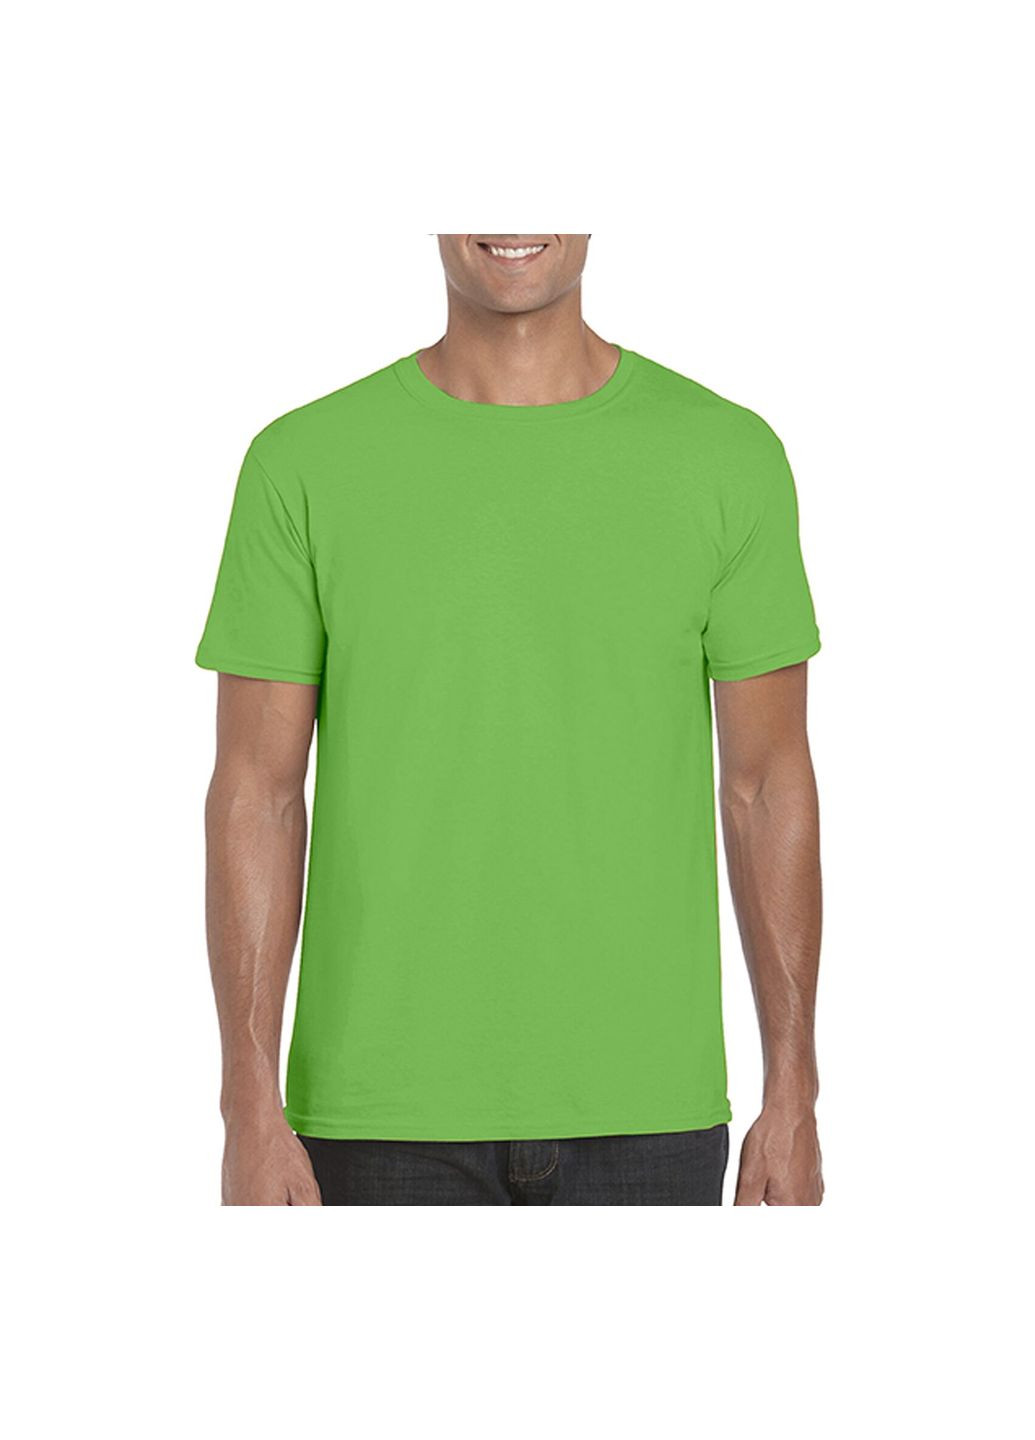 Зеленая футболка мужская однотонная зеленая 64000-361c с коротким рукавом Gildan Softstyle